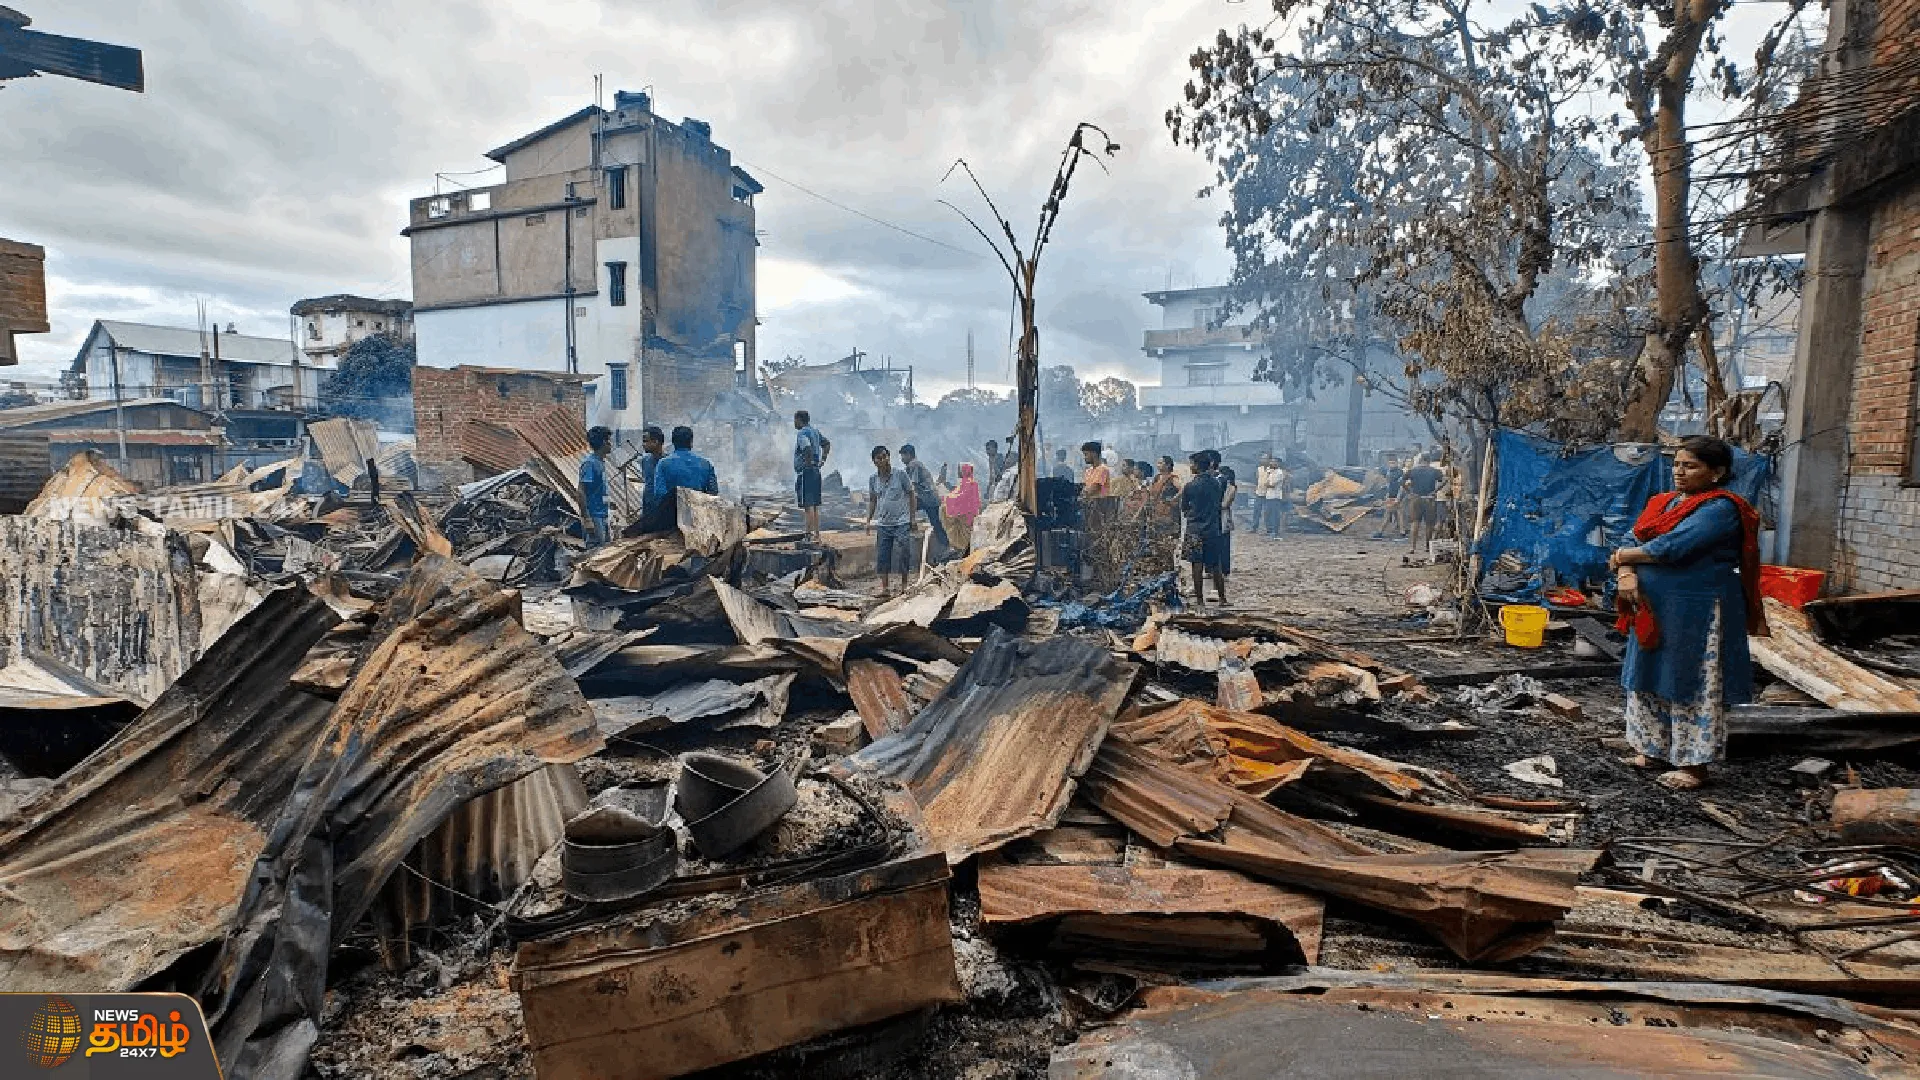 மணிப்பூர் கலவரங்களில் 175 பேர் கொல்லப்பட்டனர் |  Manipur Violence